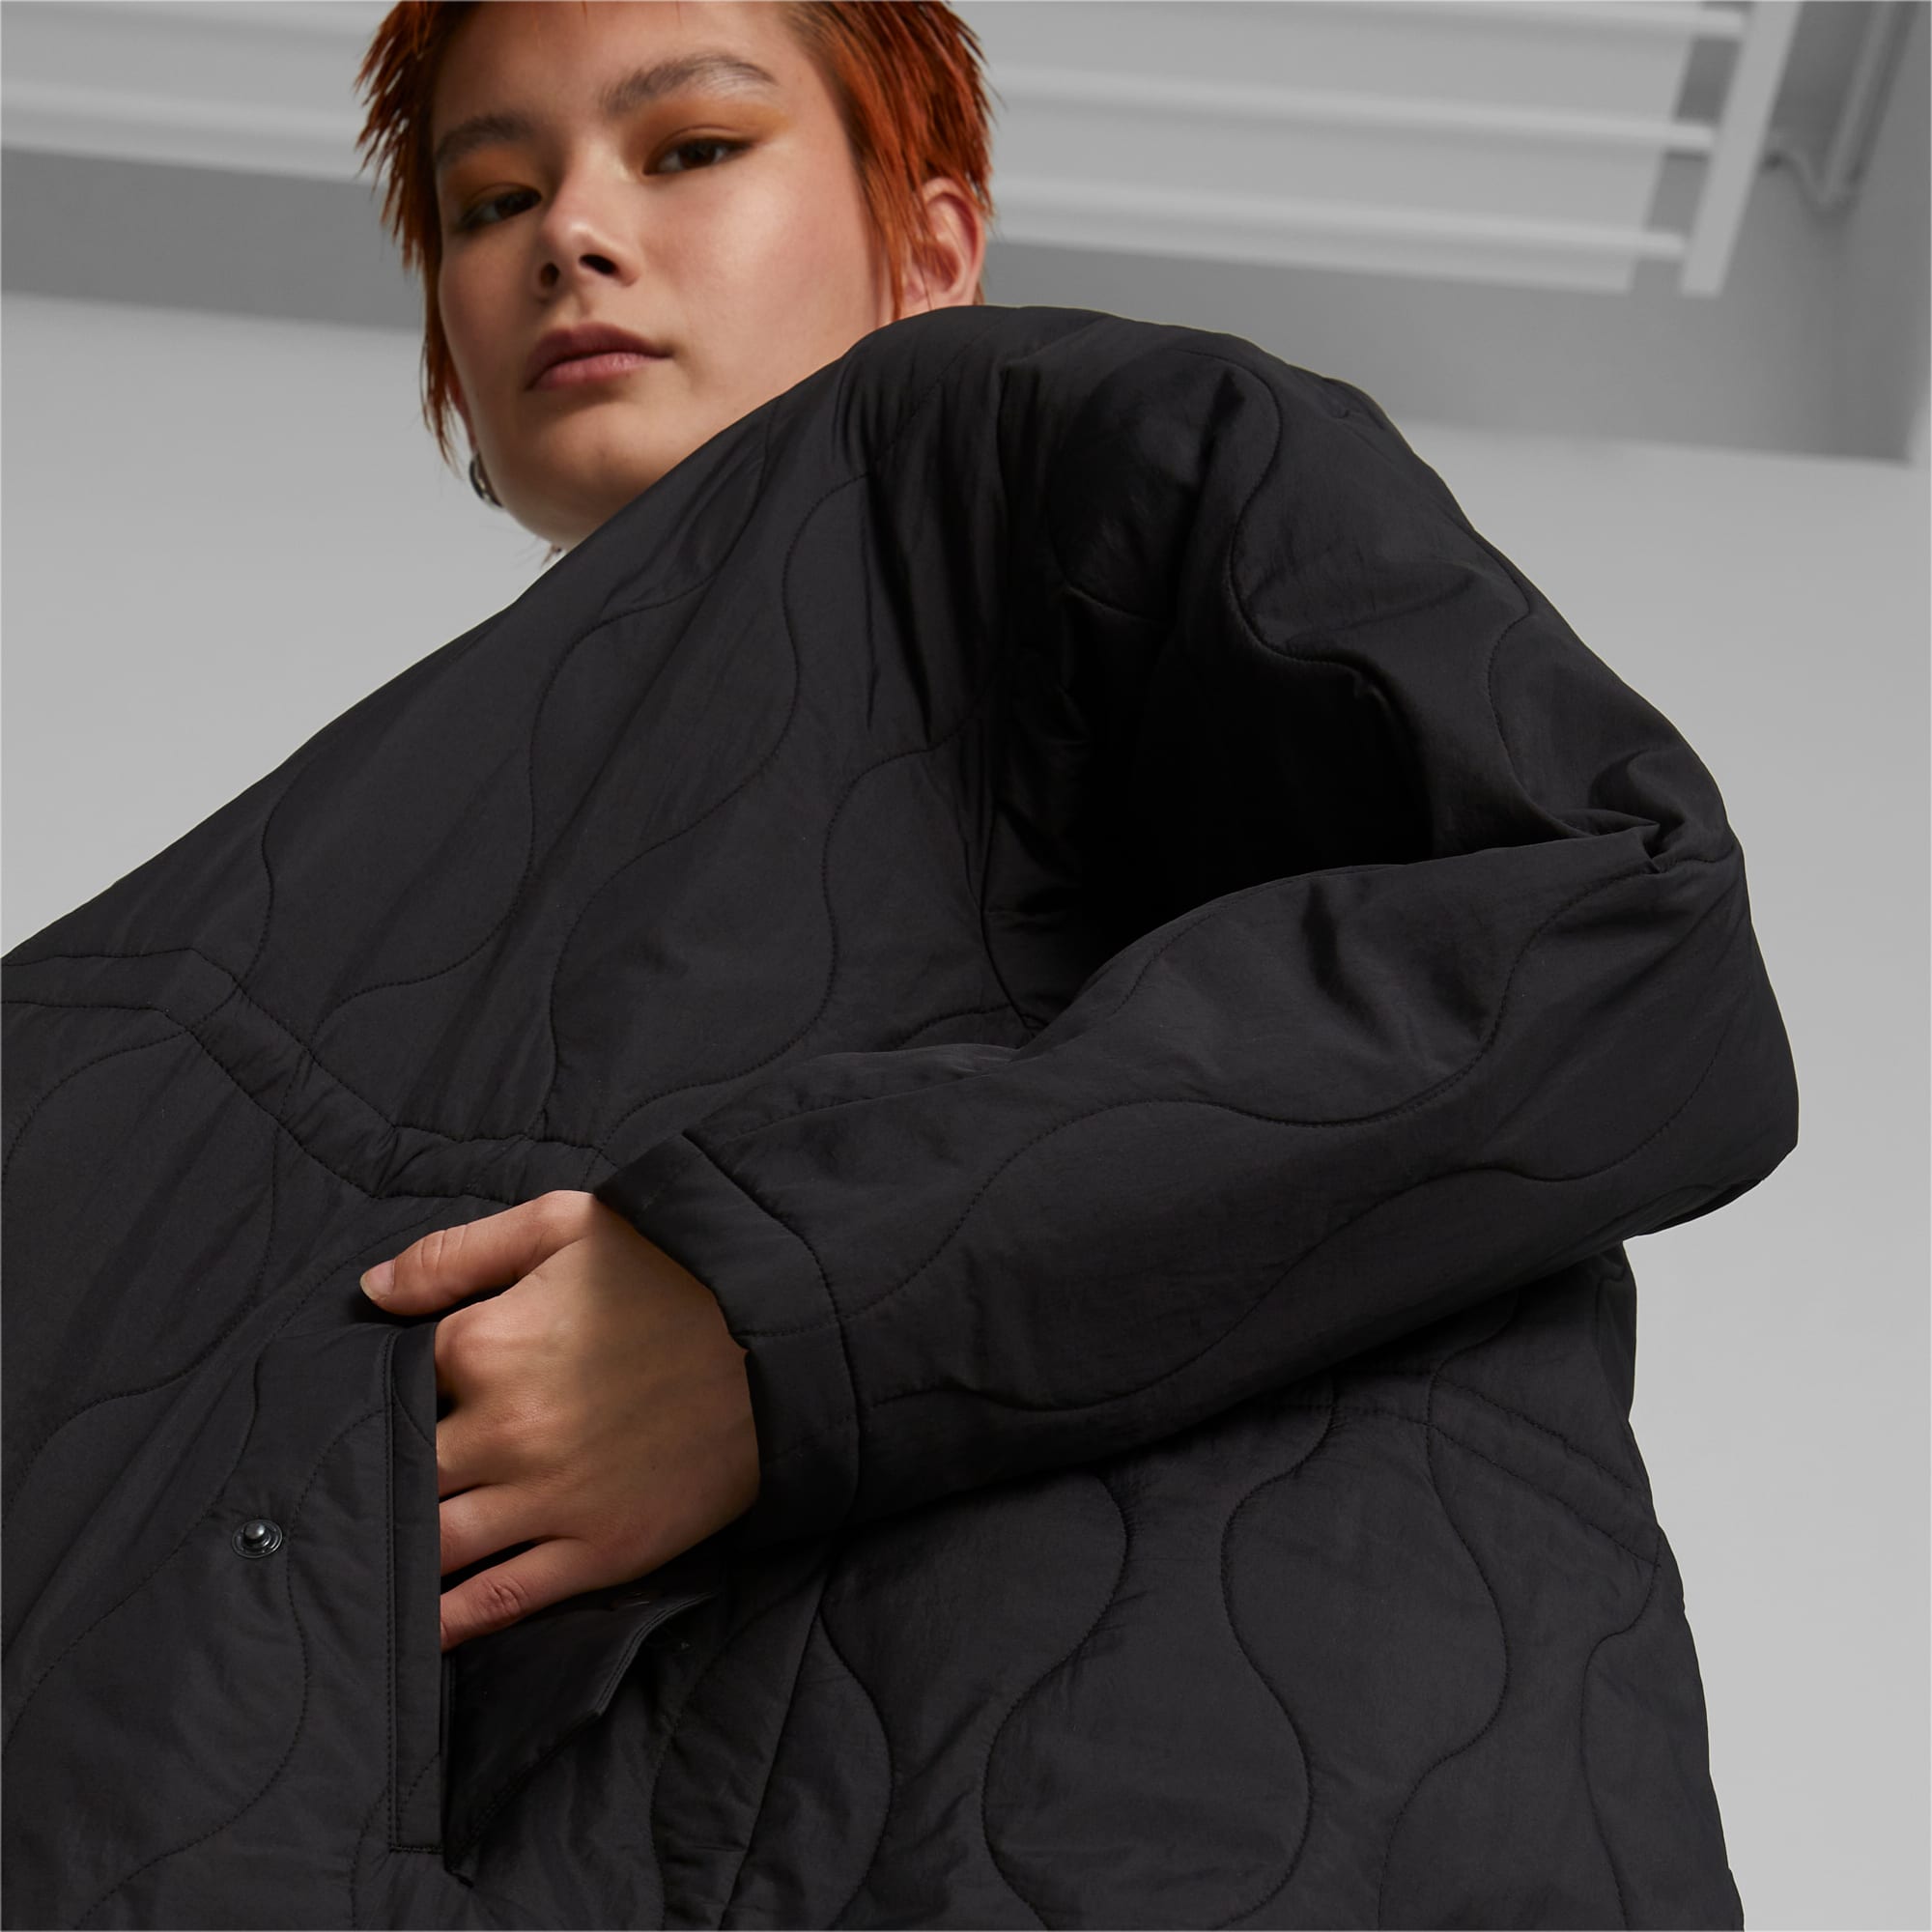 Infuse Oversized Women's Jacket | PUMA